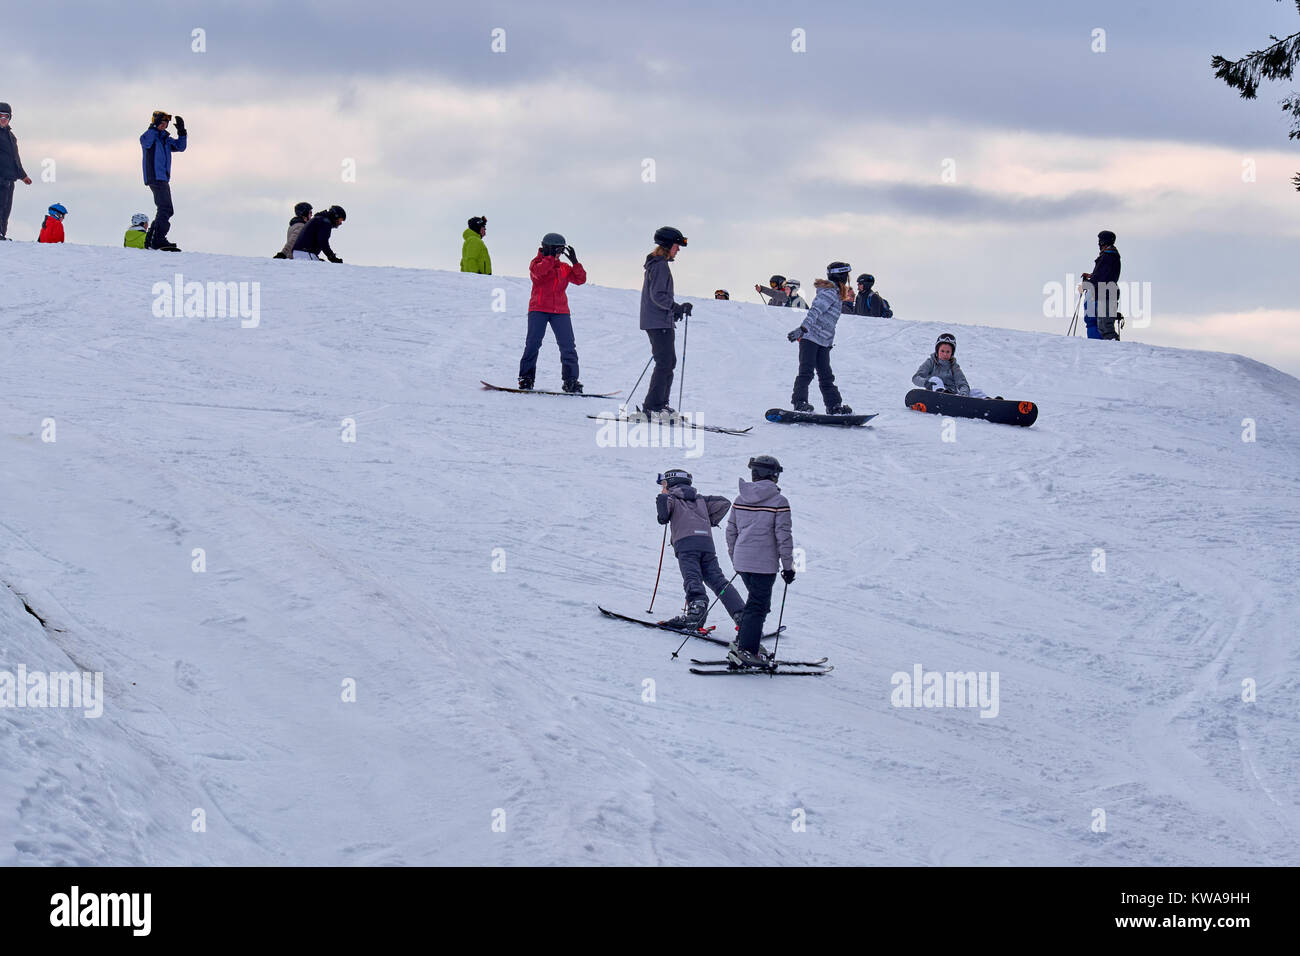 WINTERBERG, Deutschland - 16. FEBRUAR 2017: Viele Menschen auf Skiern und Snowboards auf einem Berg am Skikarussell Winterberg Stockfoto